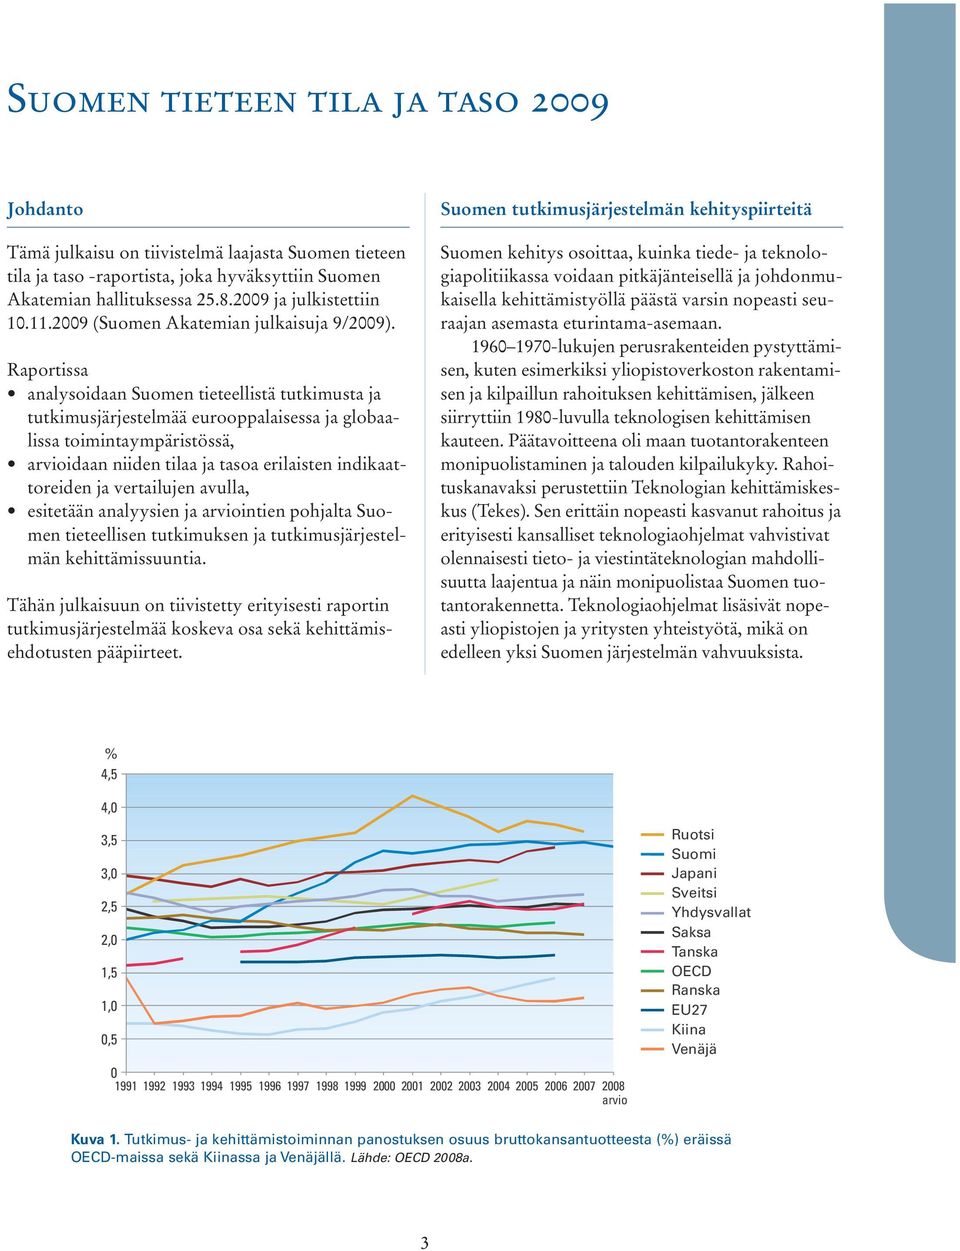 Raportissa analysoidaan Suomen tieteellistä tutkimusta ja tutkimusjärjestelmää eurooppalaisessa ja globaalissa toimintaympäristössä, arvioidaan niiden tilaa ja tasoa erilaisten indikaattoreiden ja